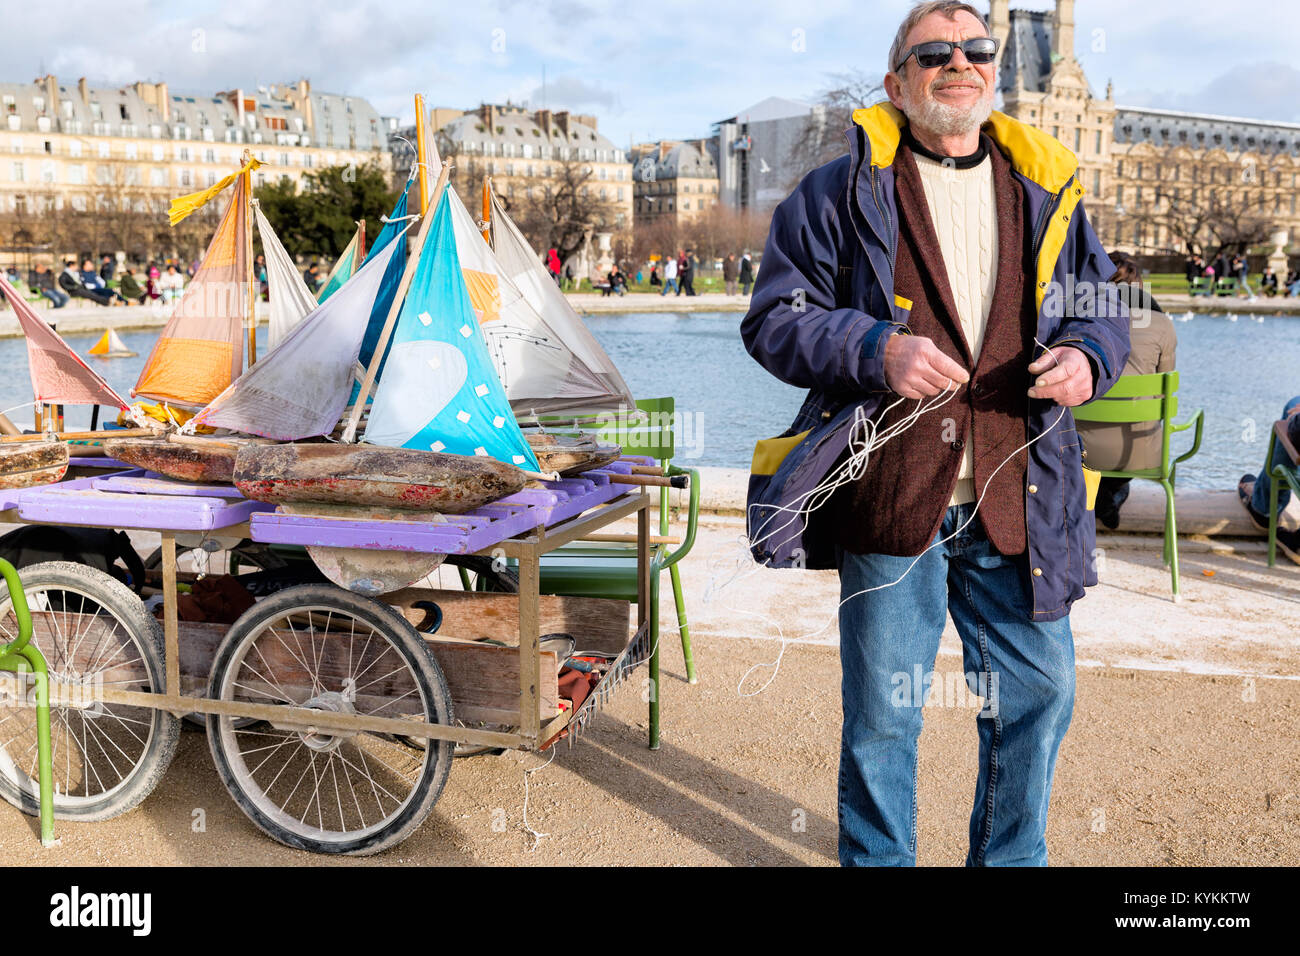 PARIS - Jan 2, 2014: Modell Segelboote zu mieten für Besucher am See im Jardin des Tuileries. Segeln die bunten vintage Boote aus Holz ist eine Population Stockfoto